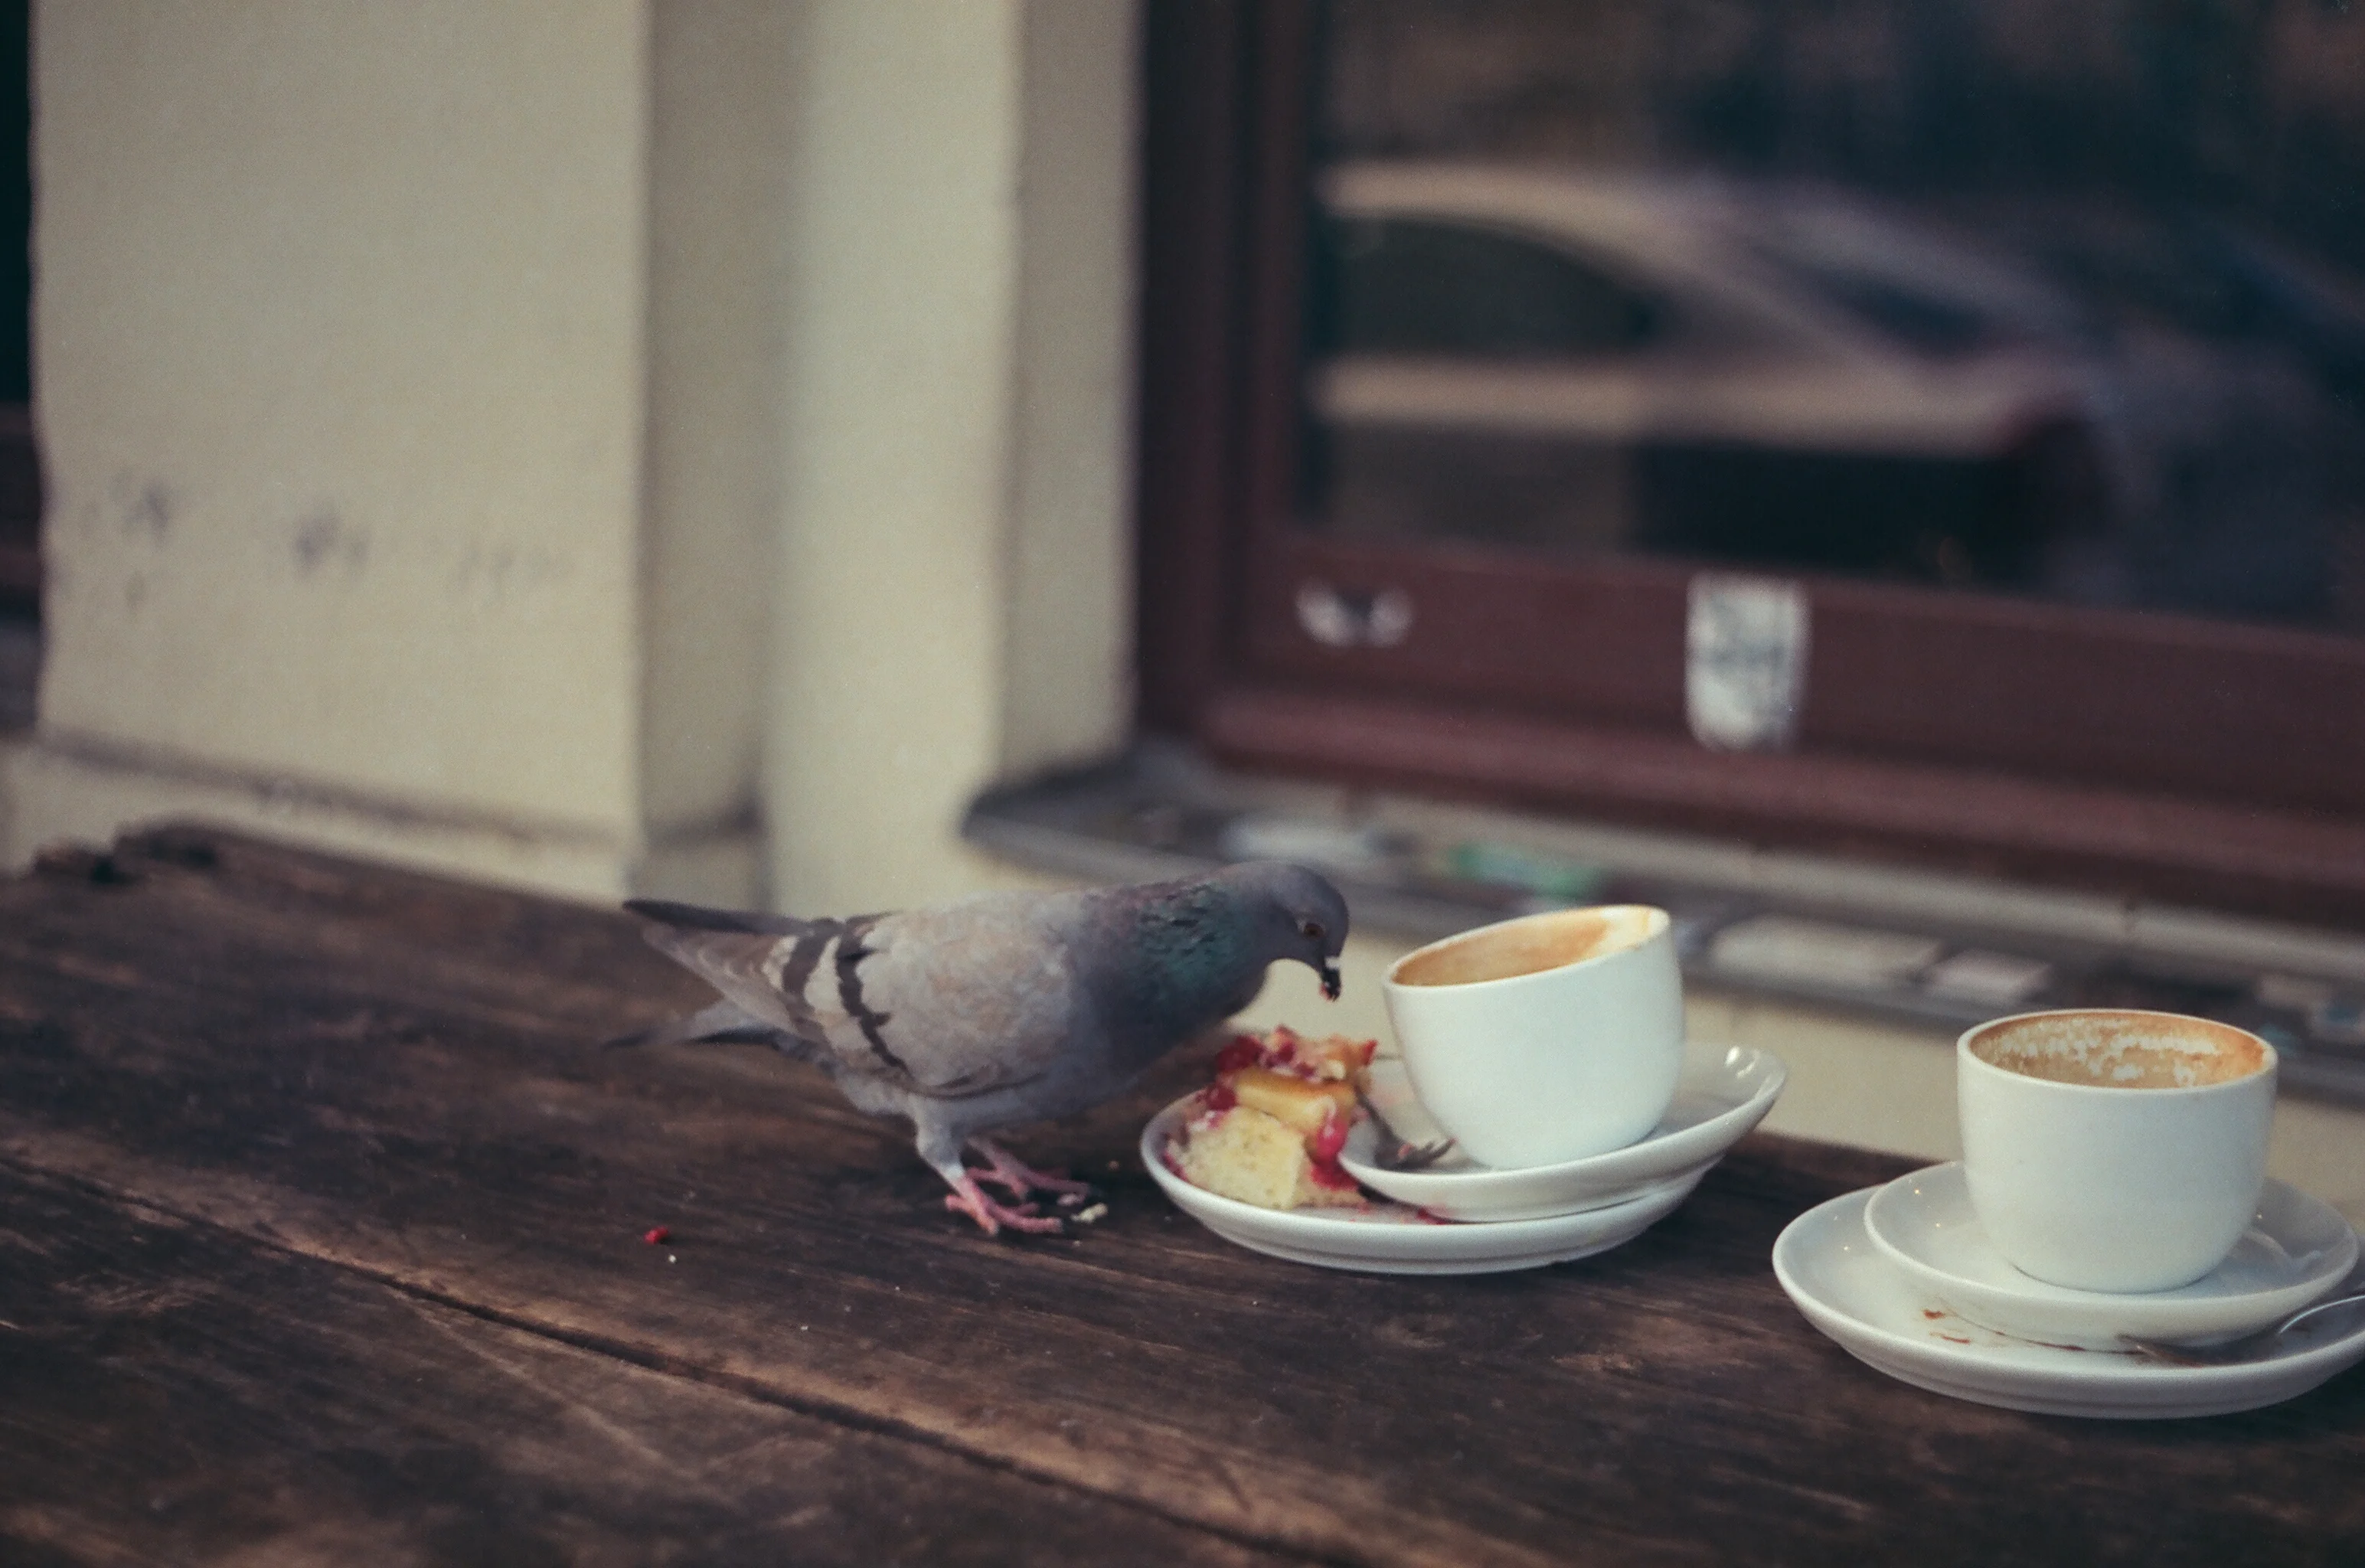 Pigeon eating cake